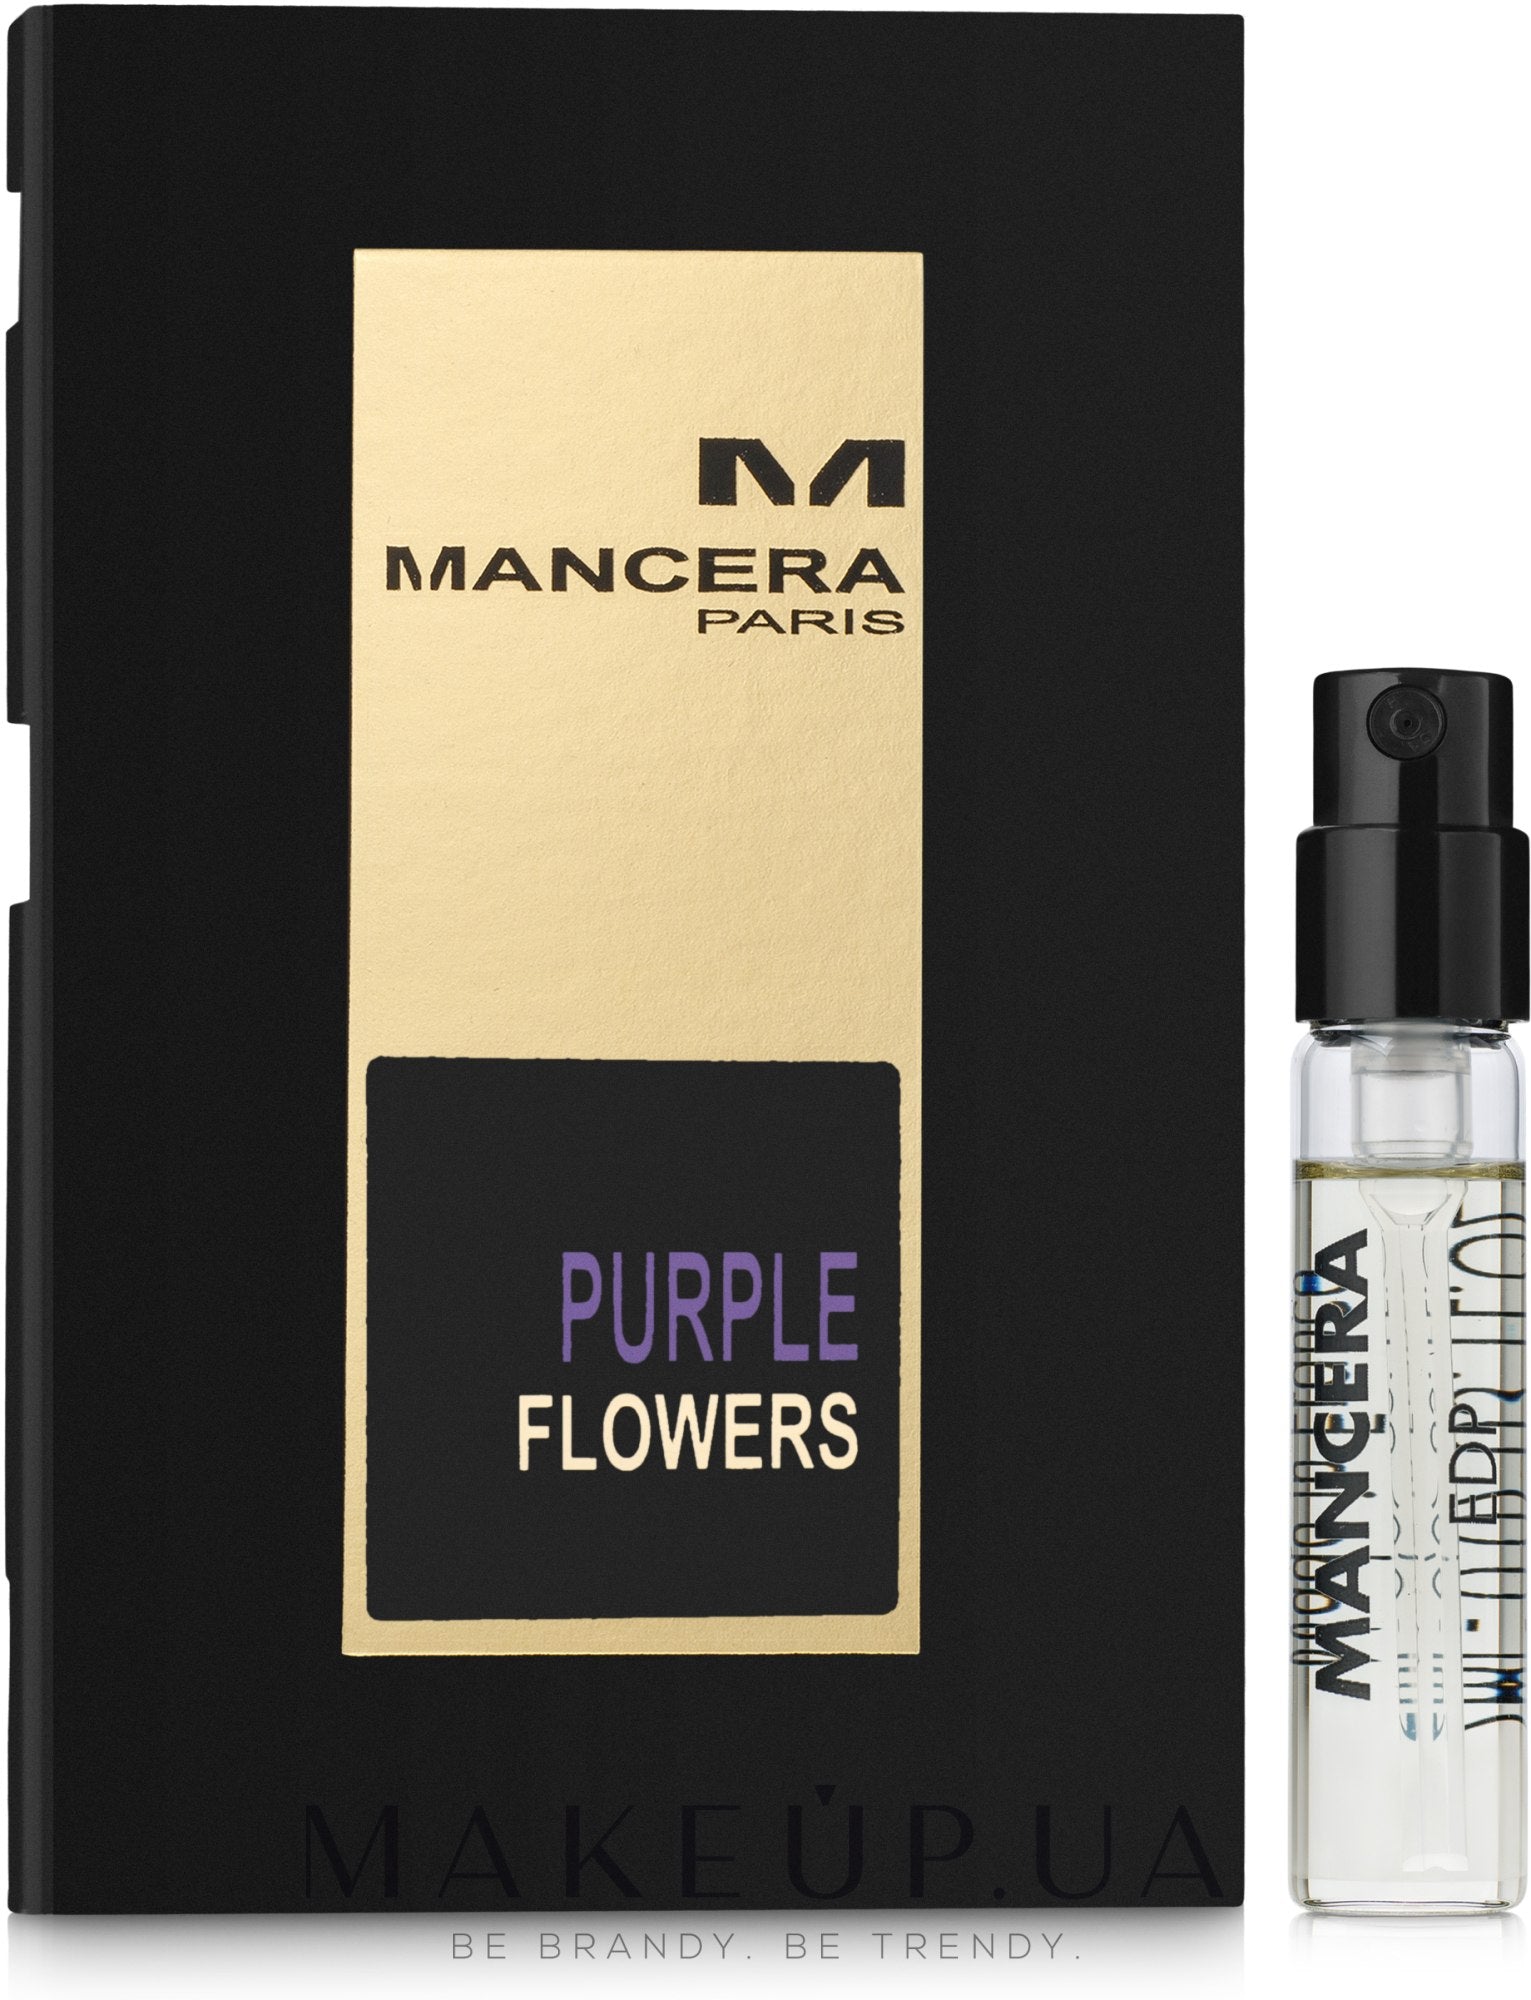 Mancera Purple Flowers ametlik näidis 2ml 0.07 fl.oz